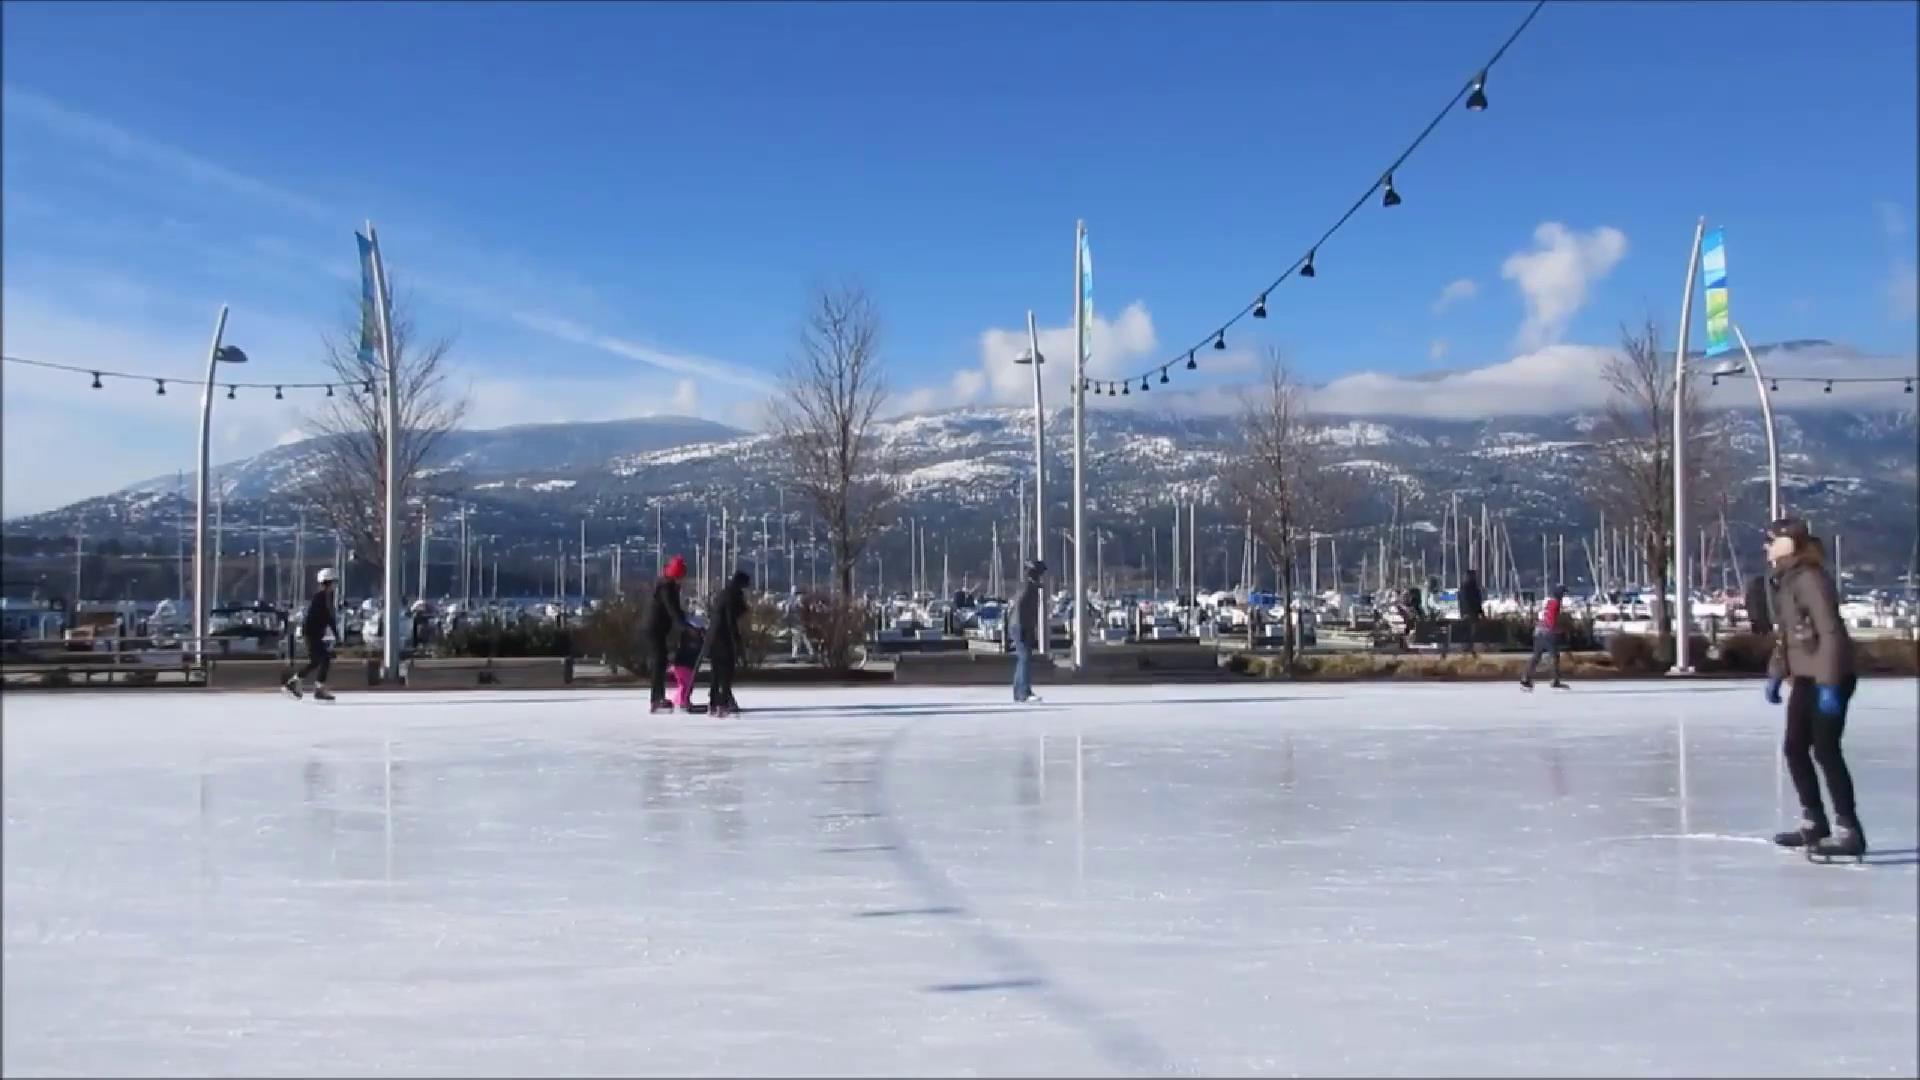 室外溜冰场滑冰运动-高清实拍-92素材网